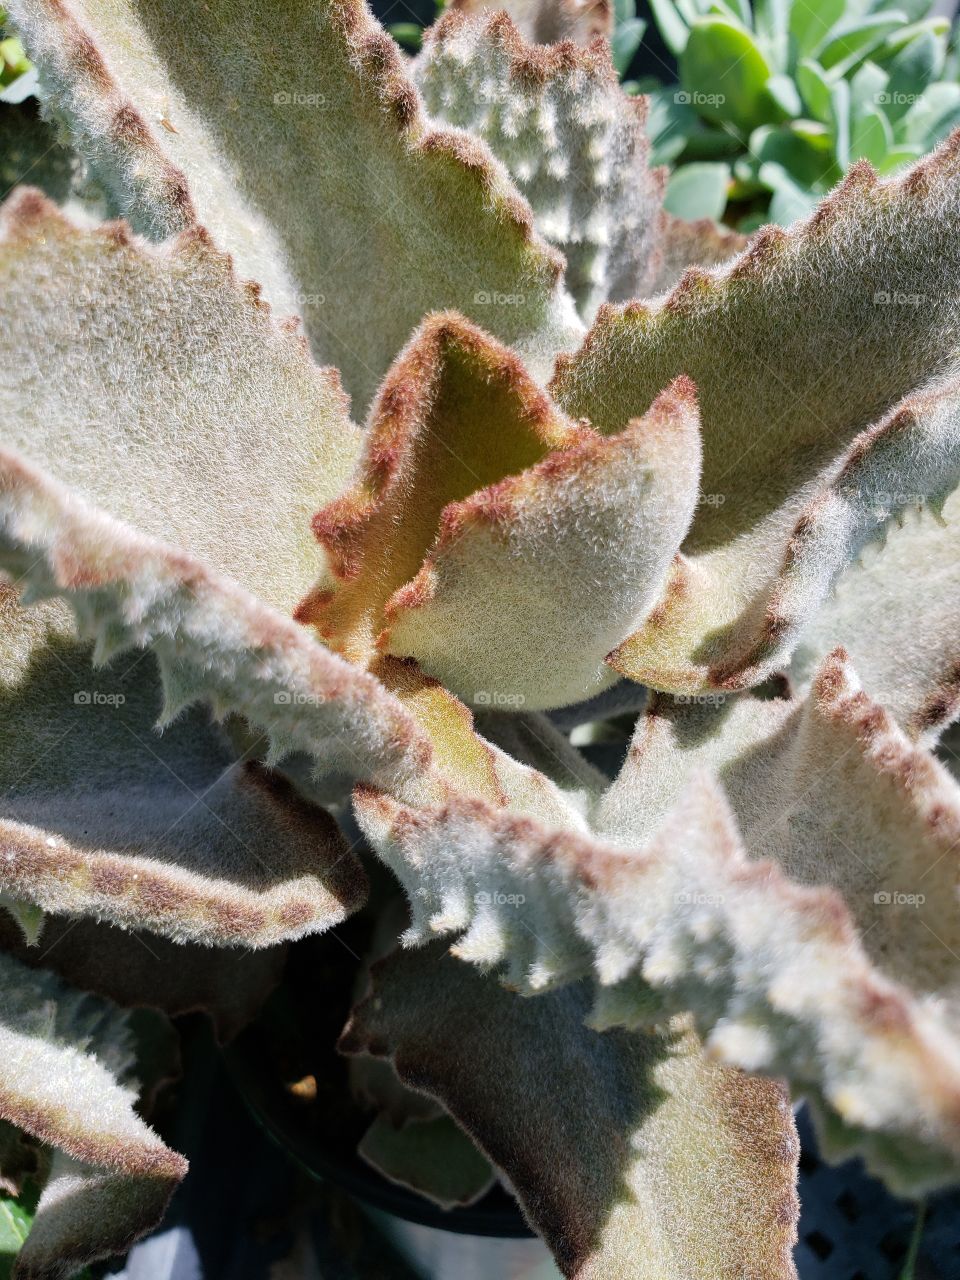 hairy plant